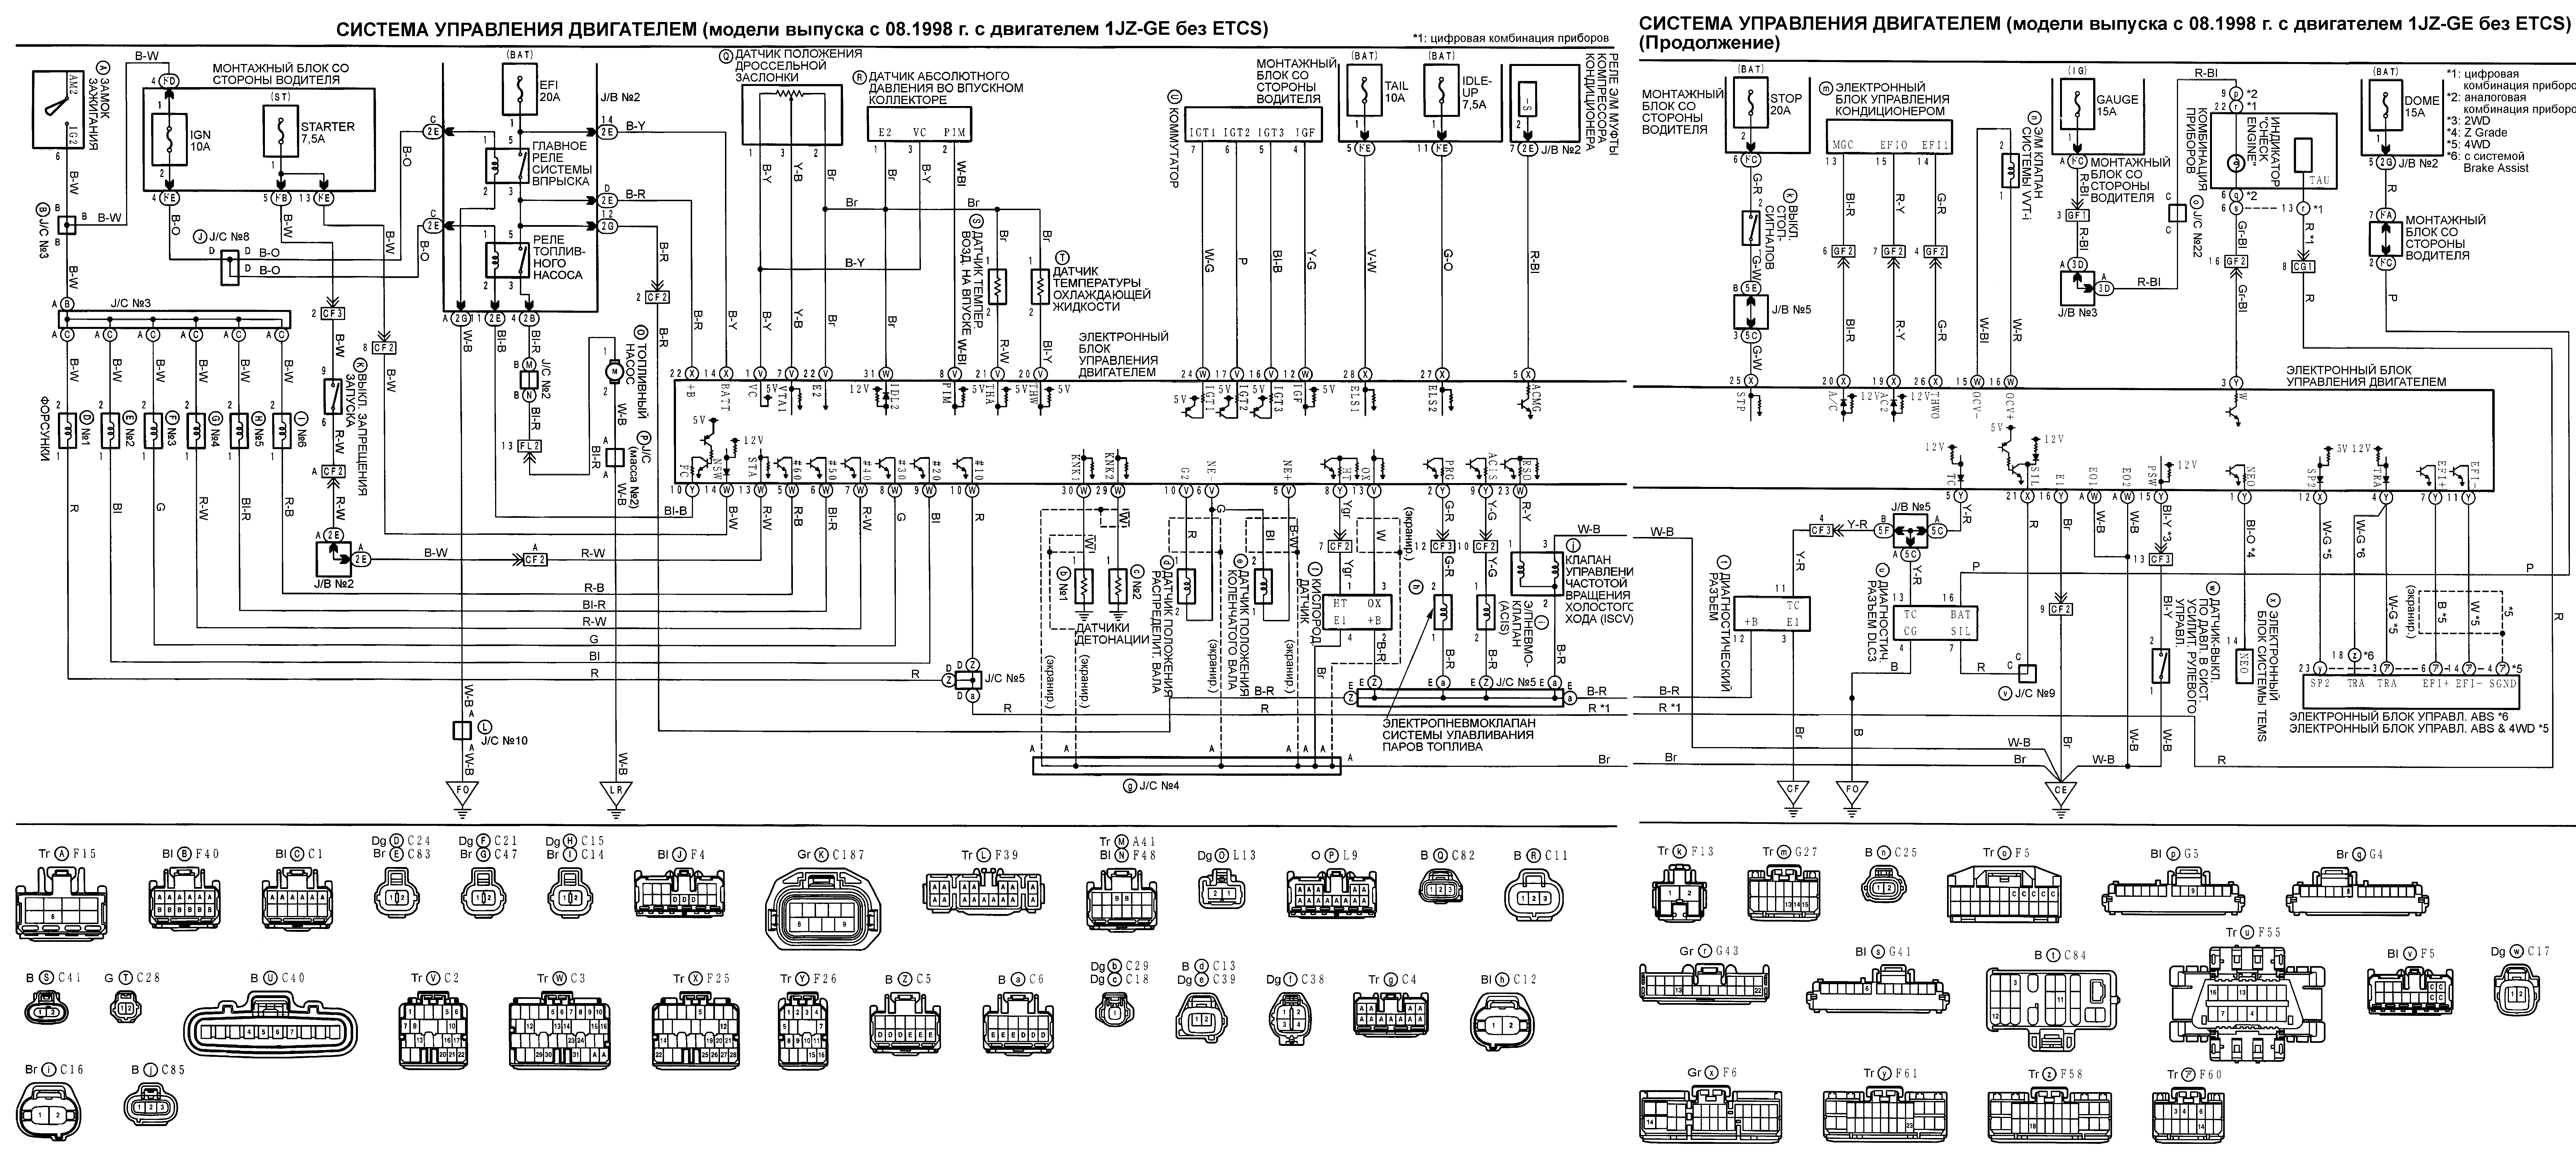 Схема управления двигателем Toyota 3l